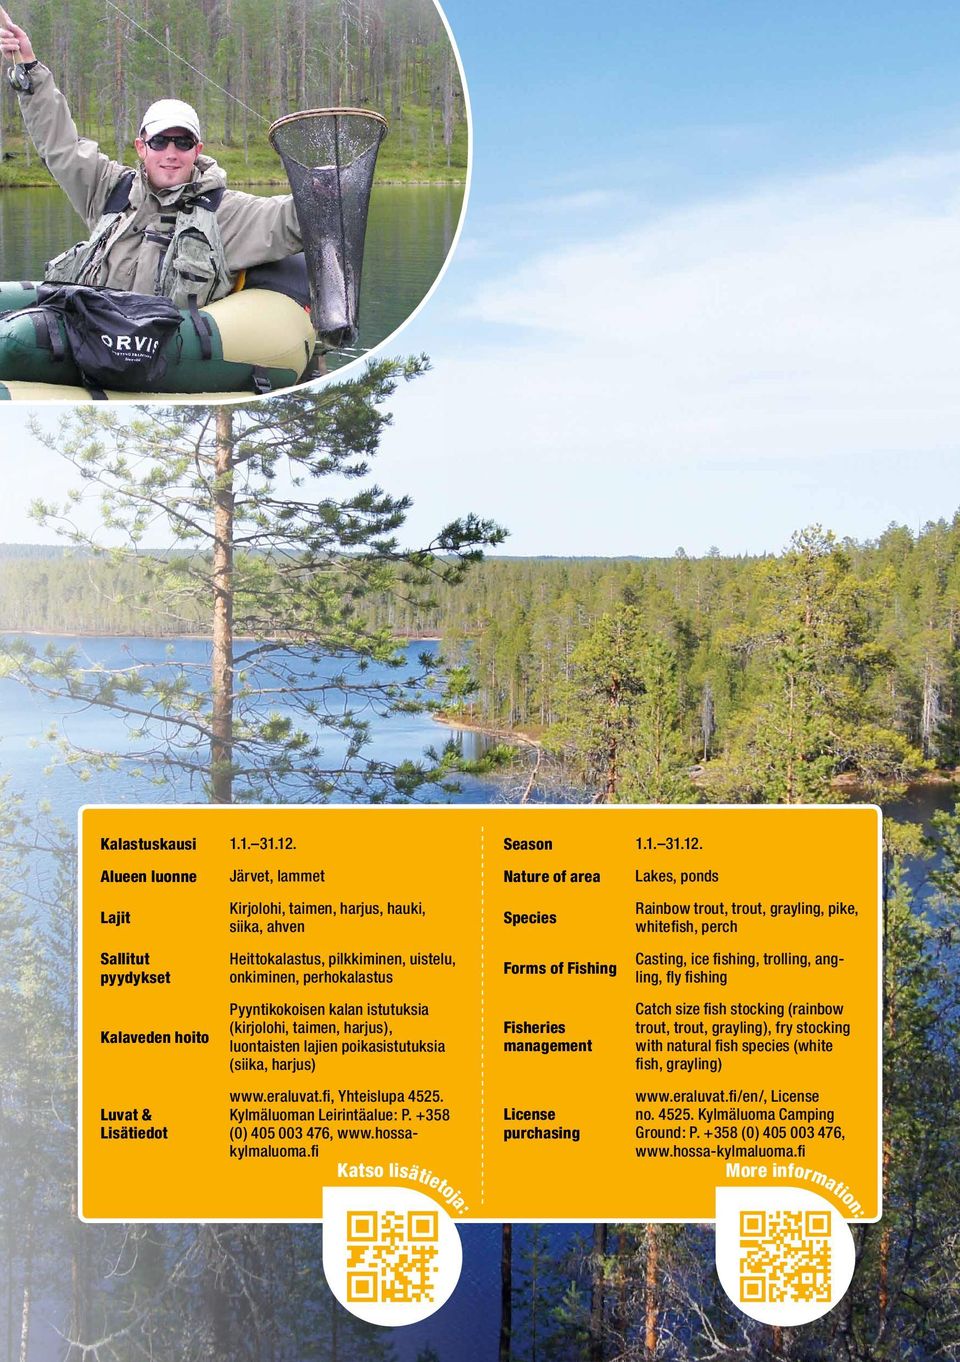 Pyyntikokoisen kalan istutuksia (kirjolohi, taimen, harjus), luontaisten lajien poikasistutuksia (siika, harjus) www.eraluvat.fi, Yhteislupa 4525. Kylmäluoman Leirintäalue: P.